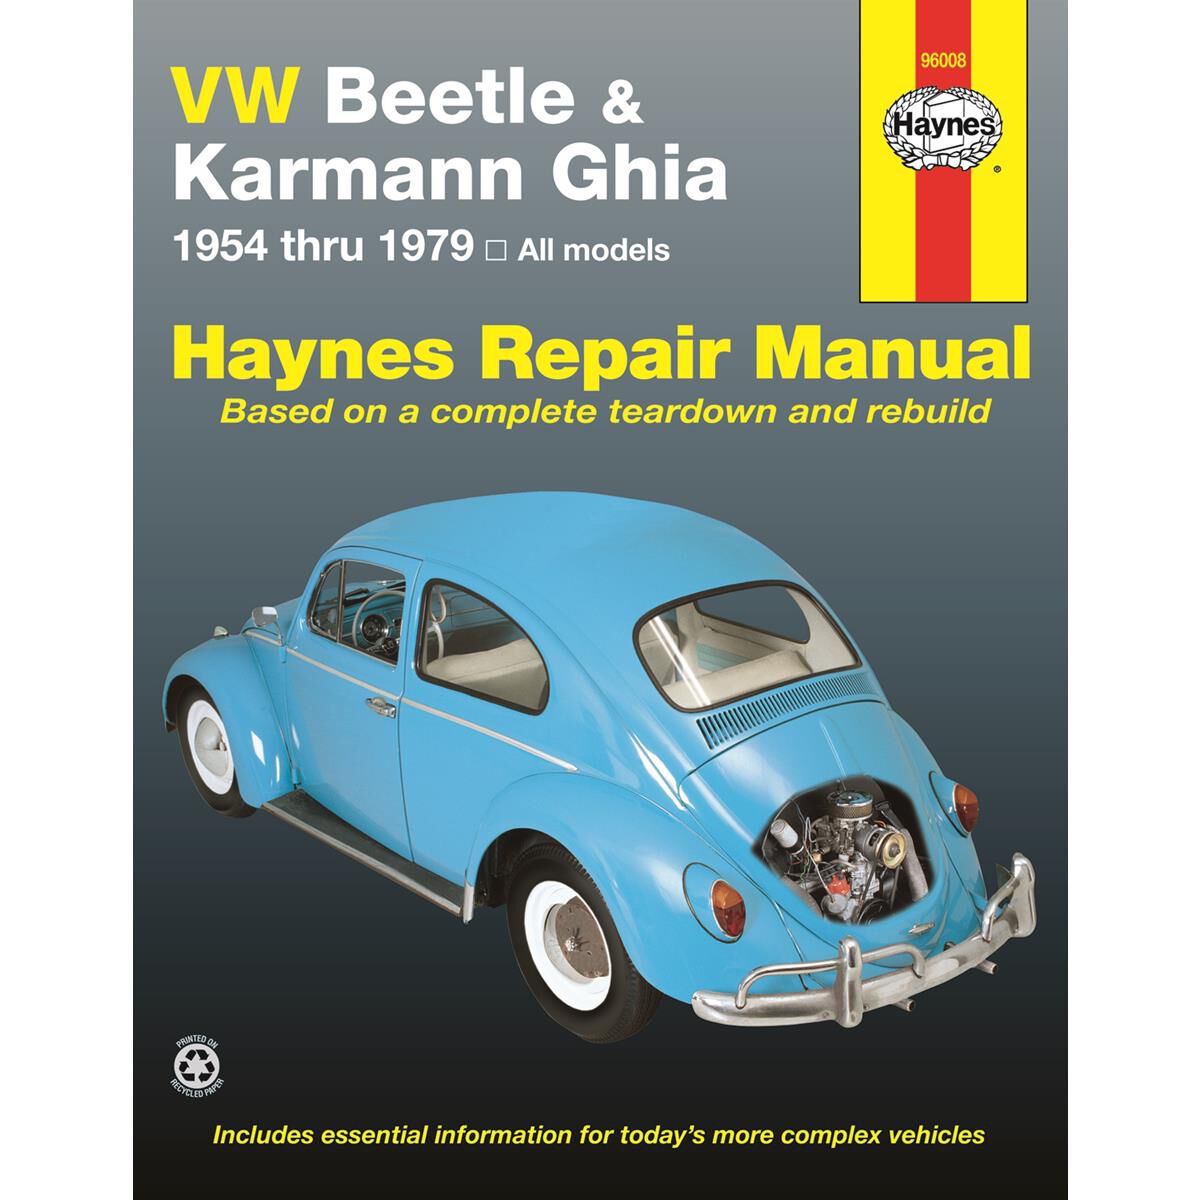 1964 vw beetle repair manual pdf free